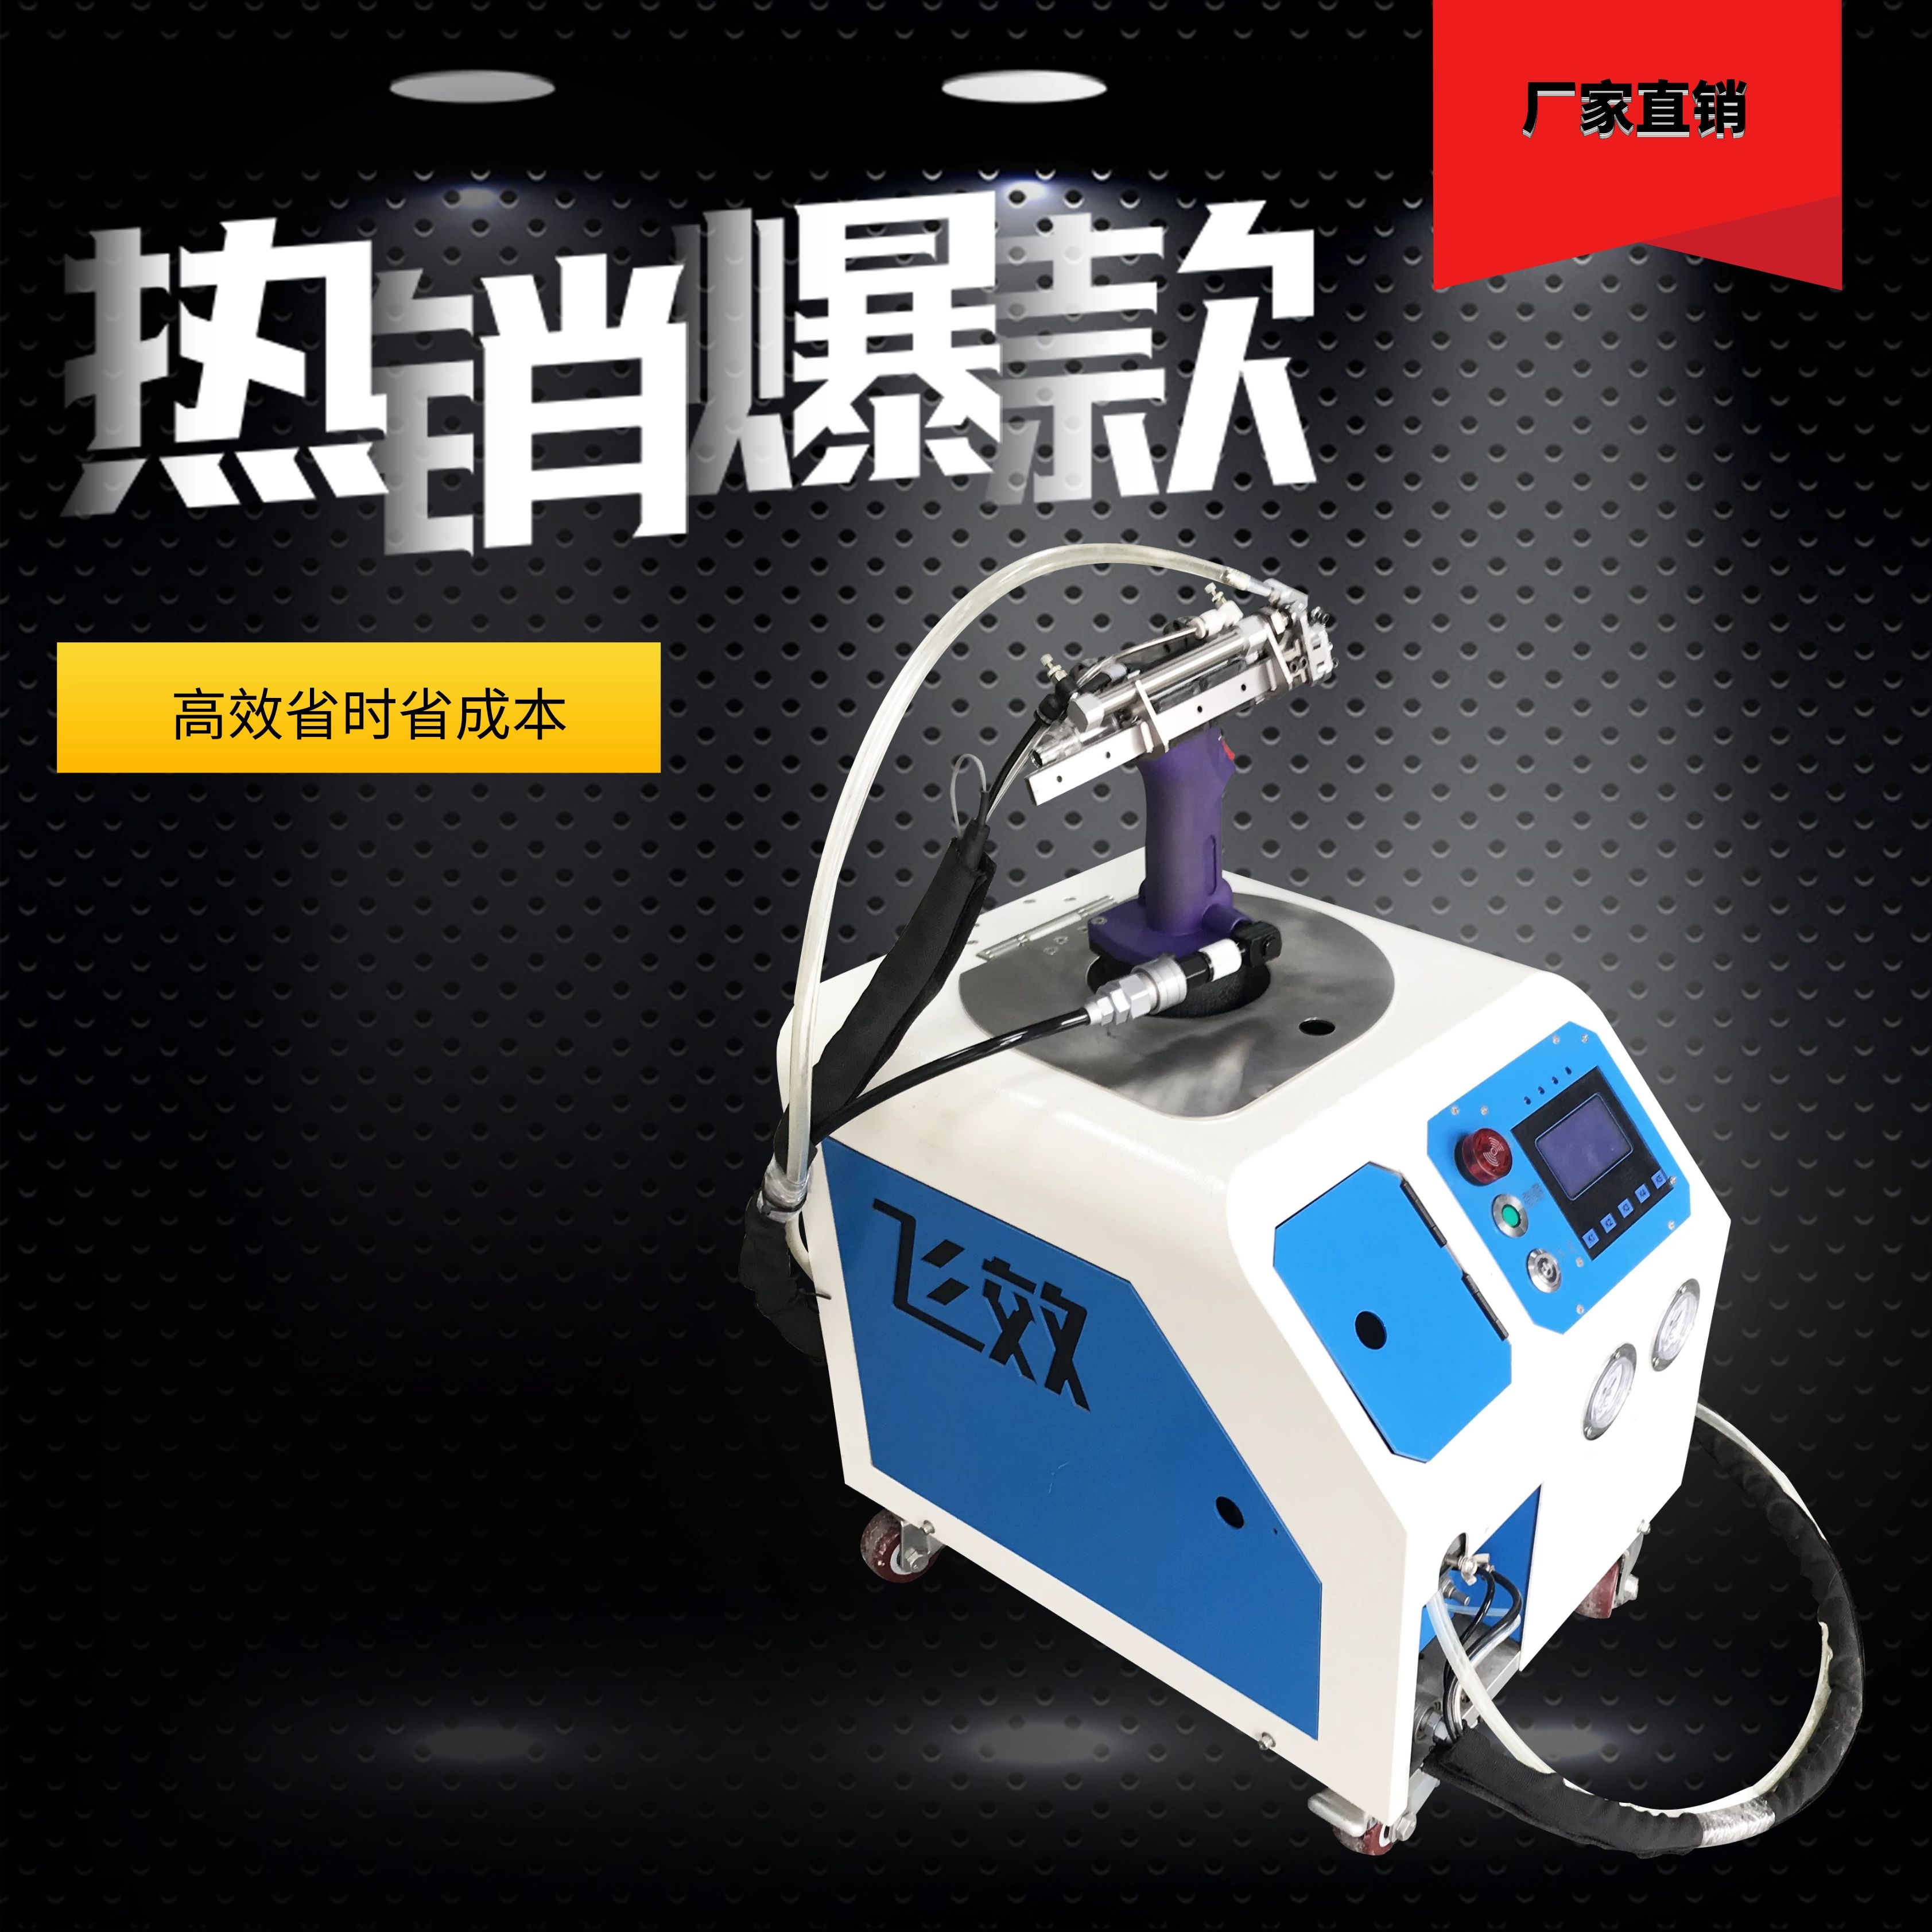 北京自动抽芯拉钉机-东莞市飞效智能科技有限公司